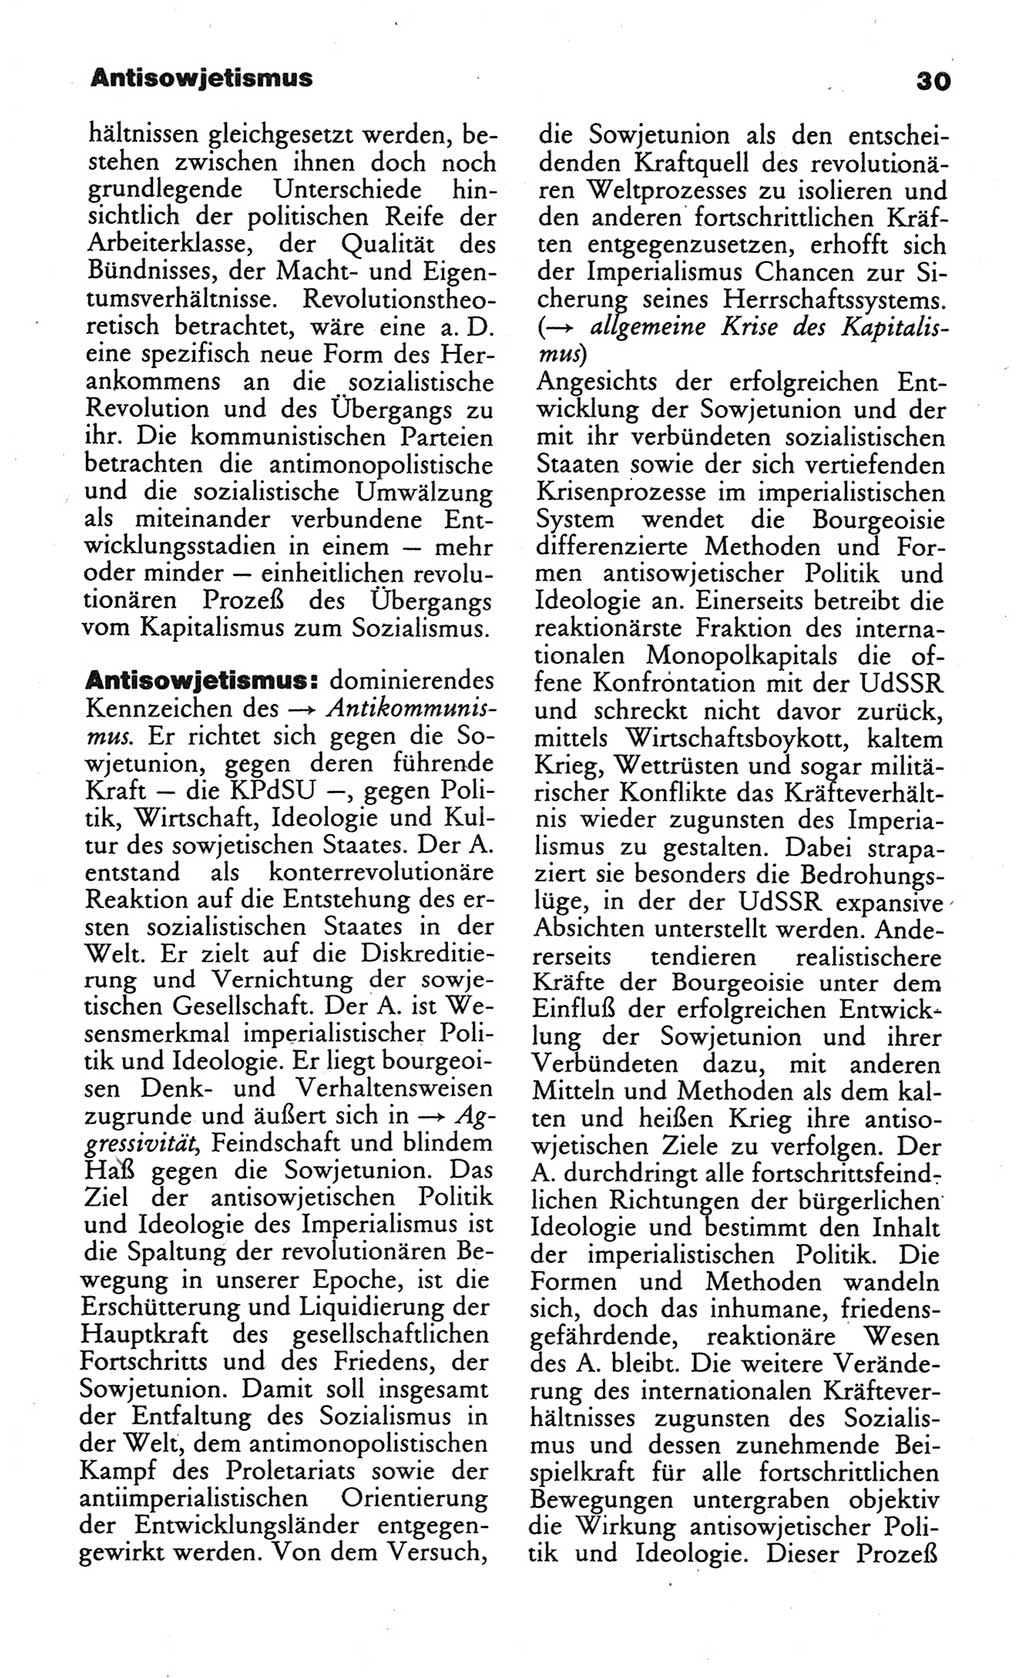 Wörterbuch des wissenschaftlichen Kommunismus [Deutsche Demokratische Republik (DDR)] 1984, Seite 30 (Wb. wiss. Komm. DDR 1984, S. 30)